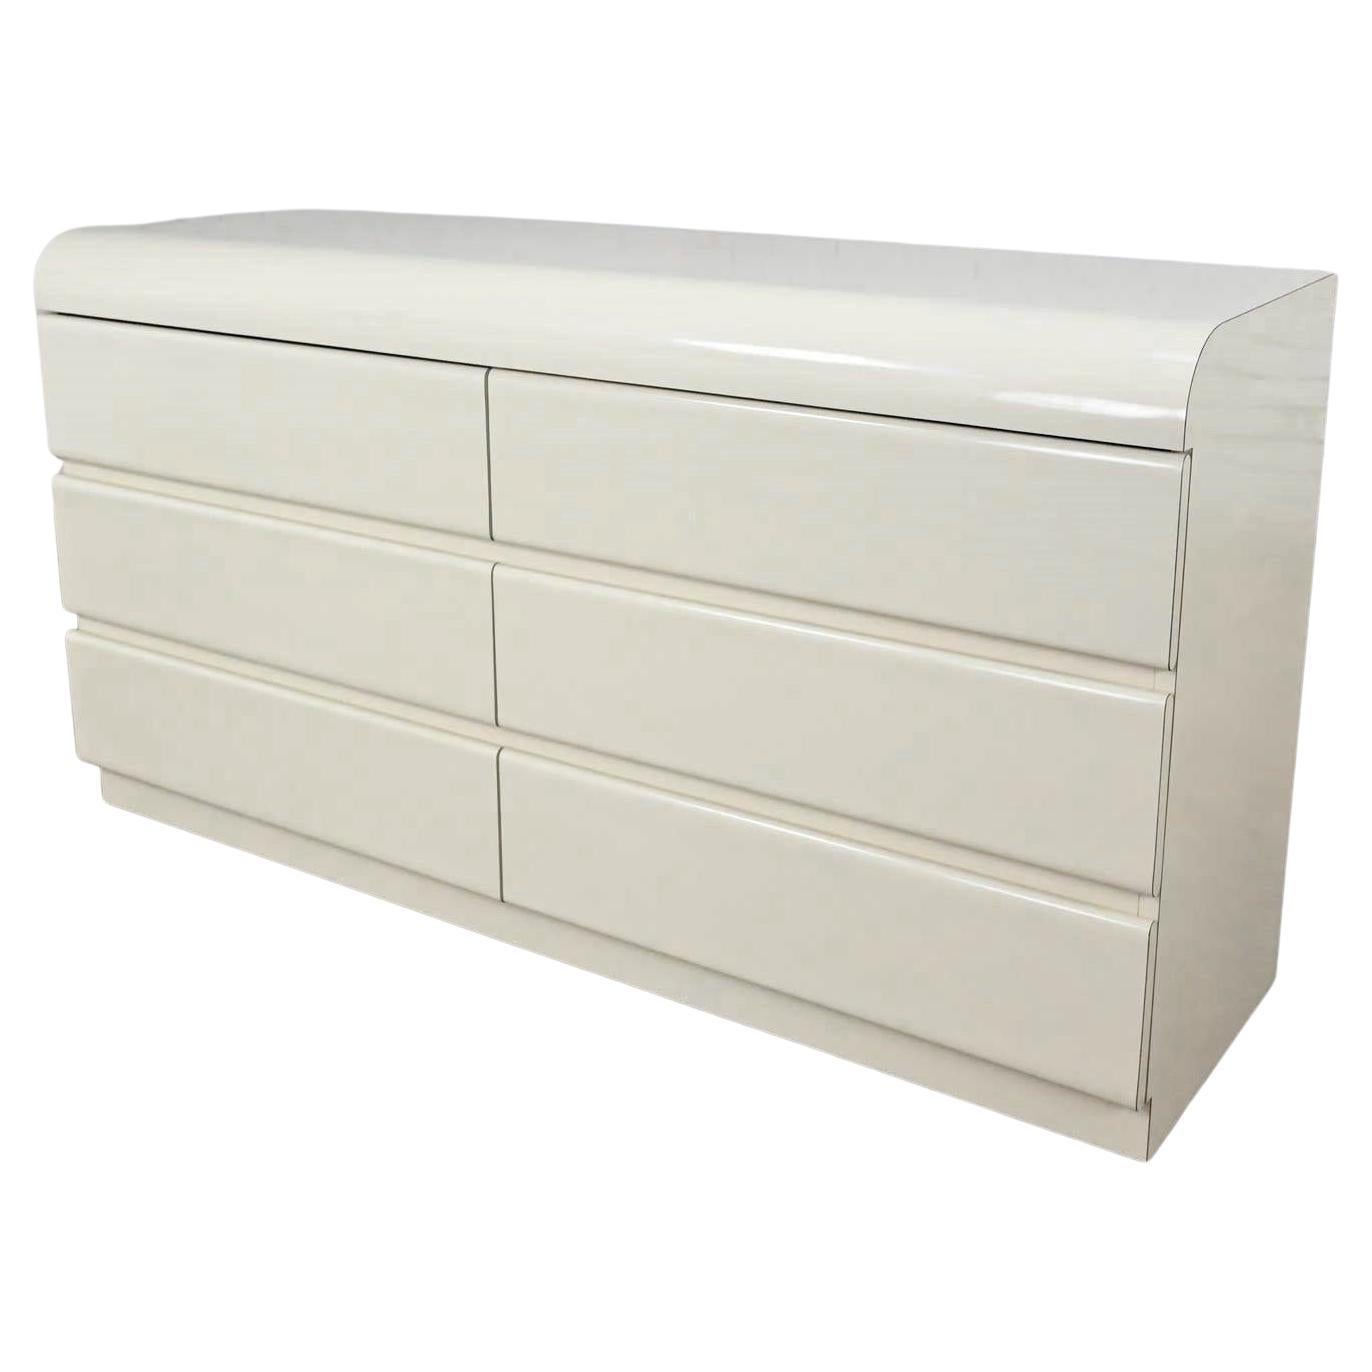 Modern bis Postmoderne Kommode oder Center Display aus weißem Laminat mit 6 Schubladen, maßgefertigt